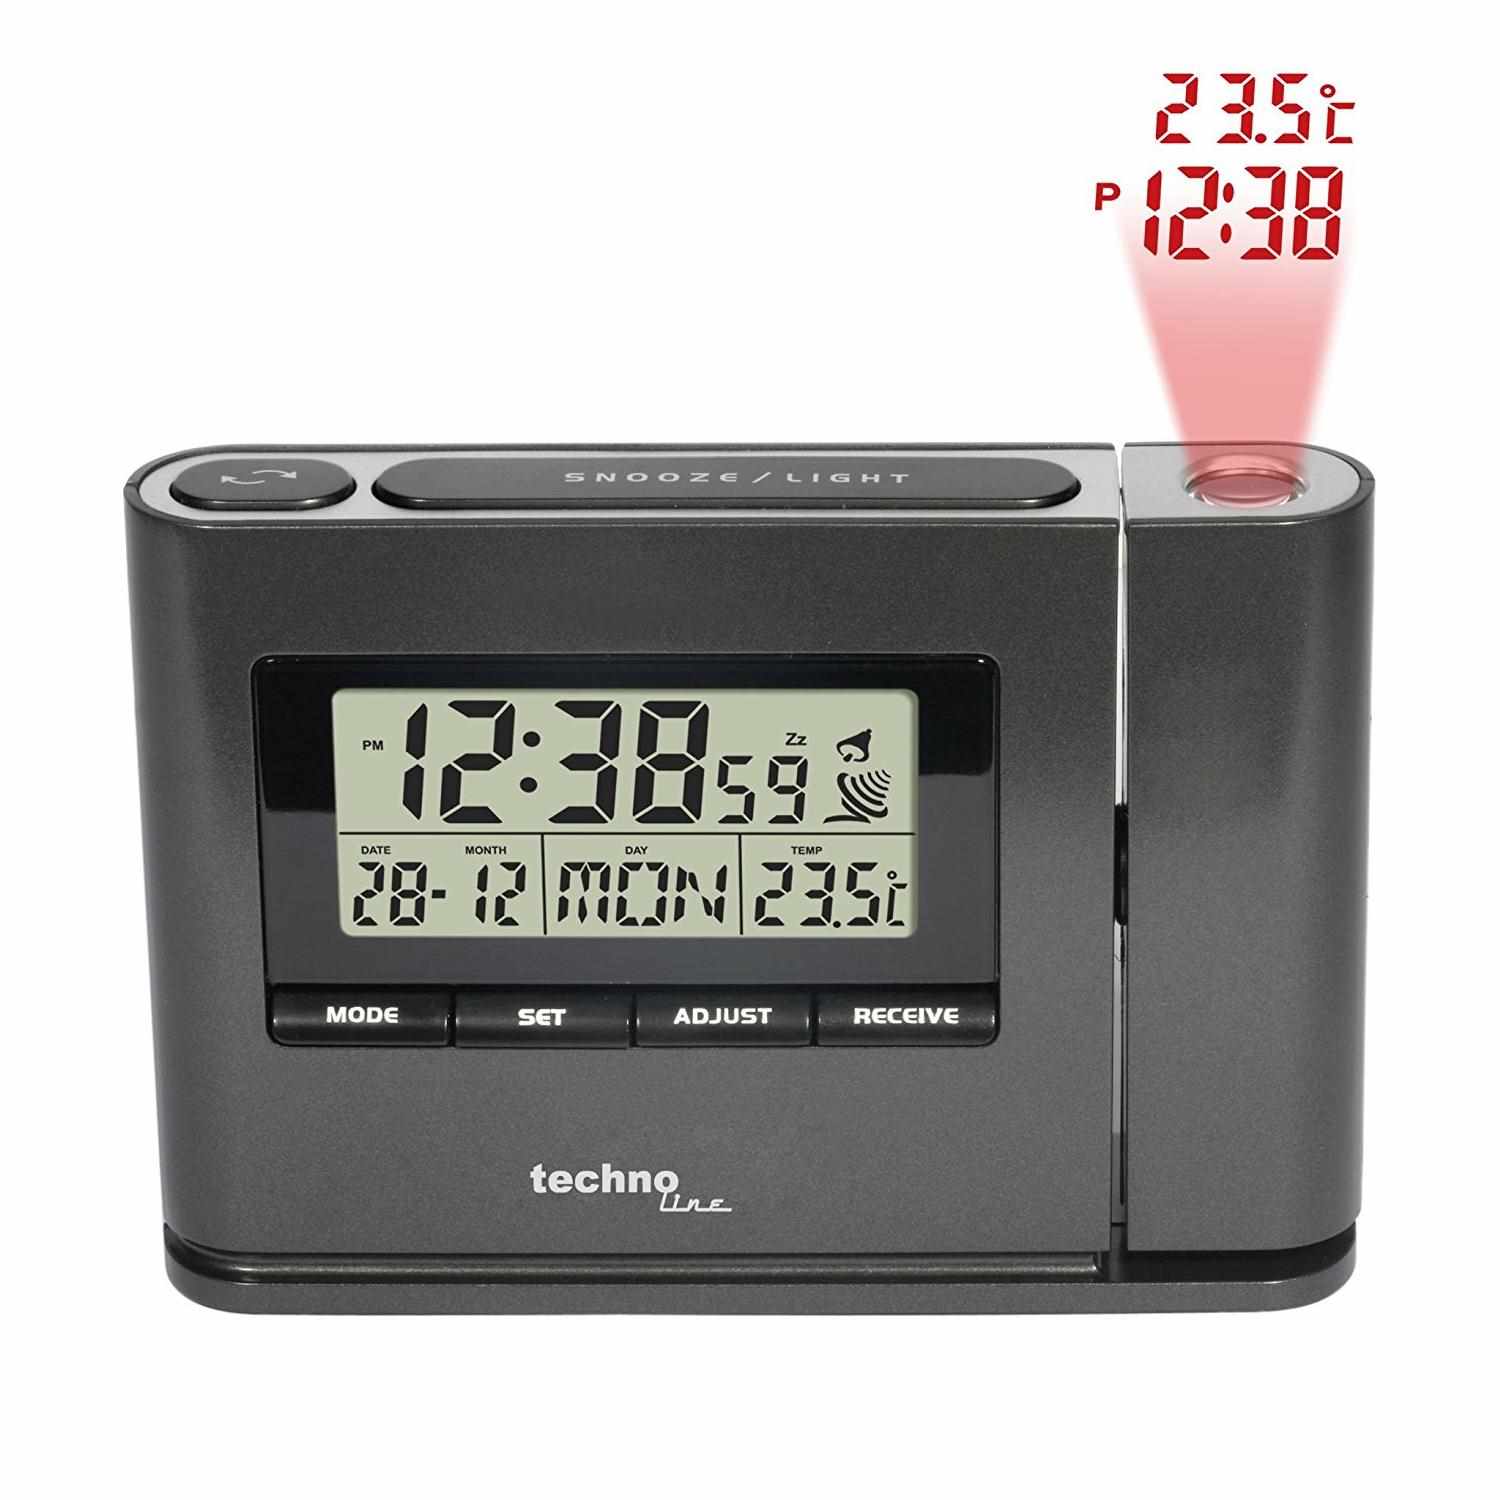 TechnoLine WT 519 - digitální budík s projekcí času a vnitřní teploty1 